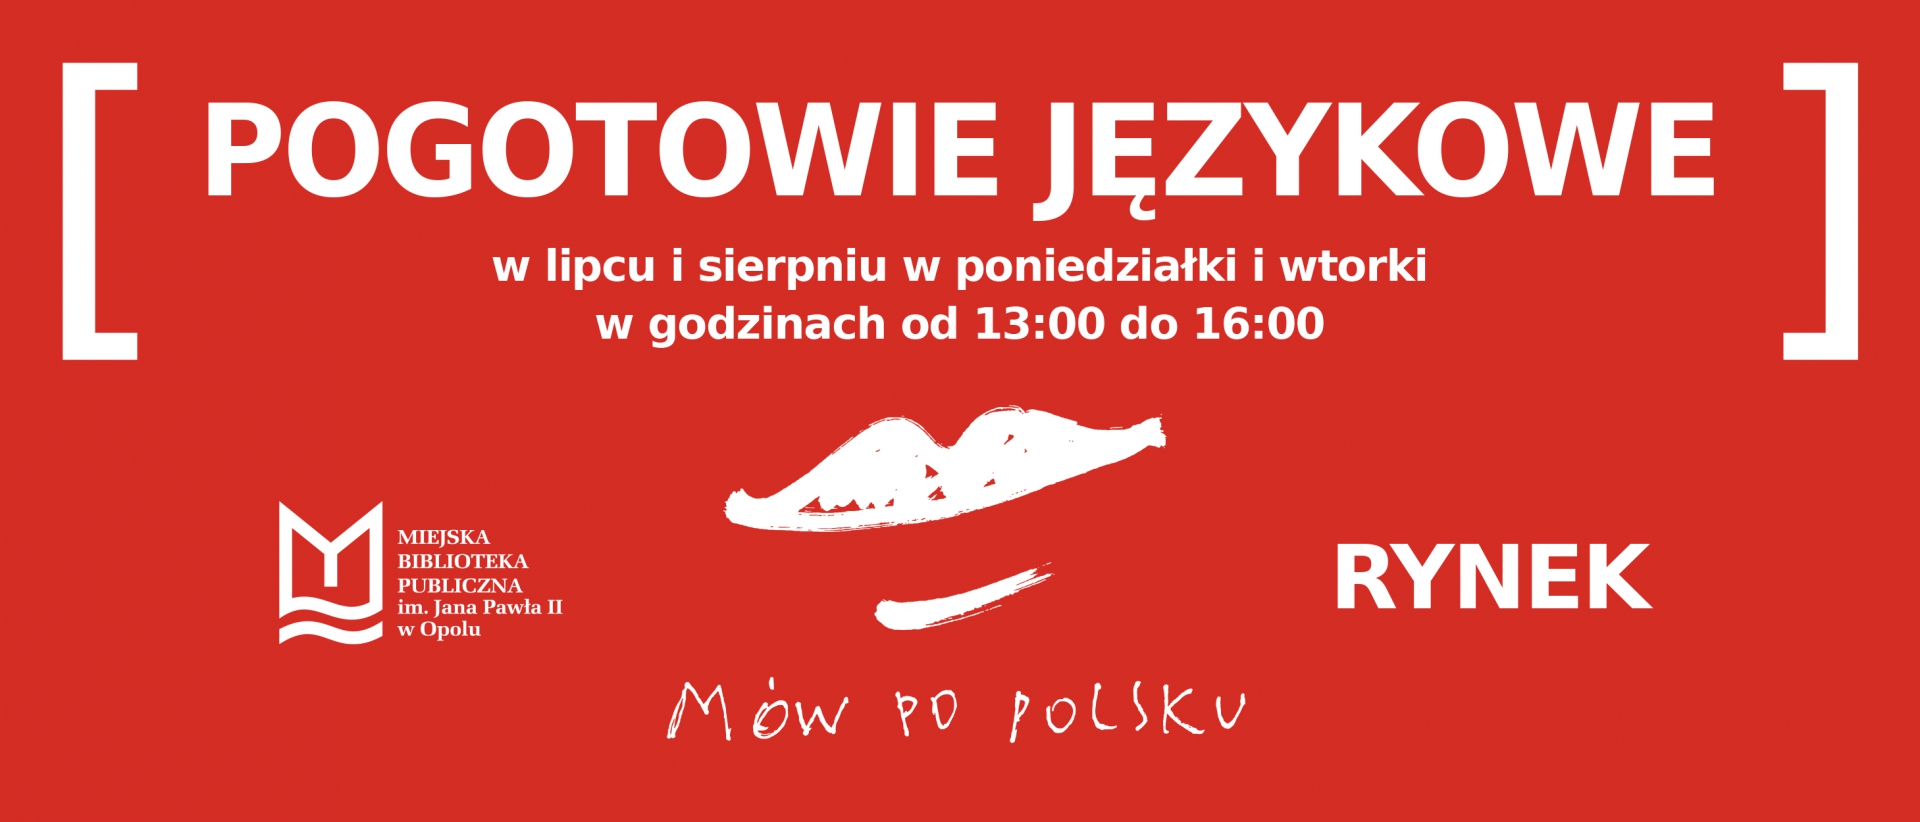 Mów po polsku! - Pogotowie Językowe